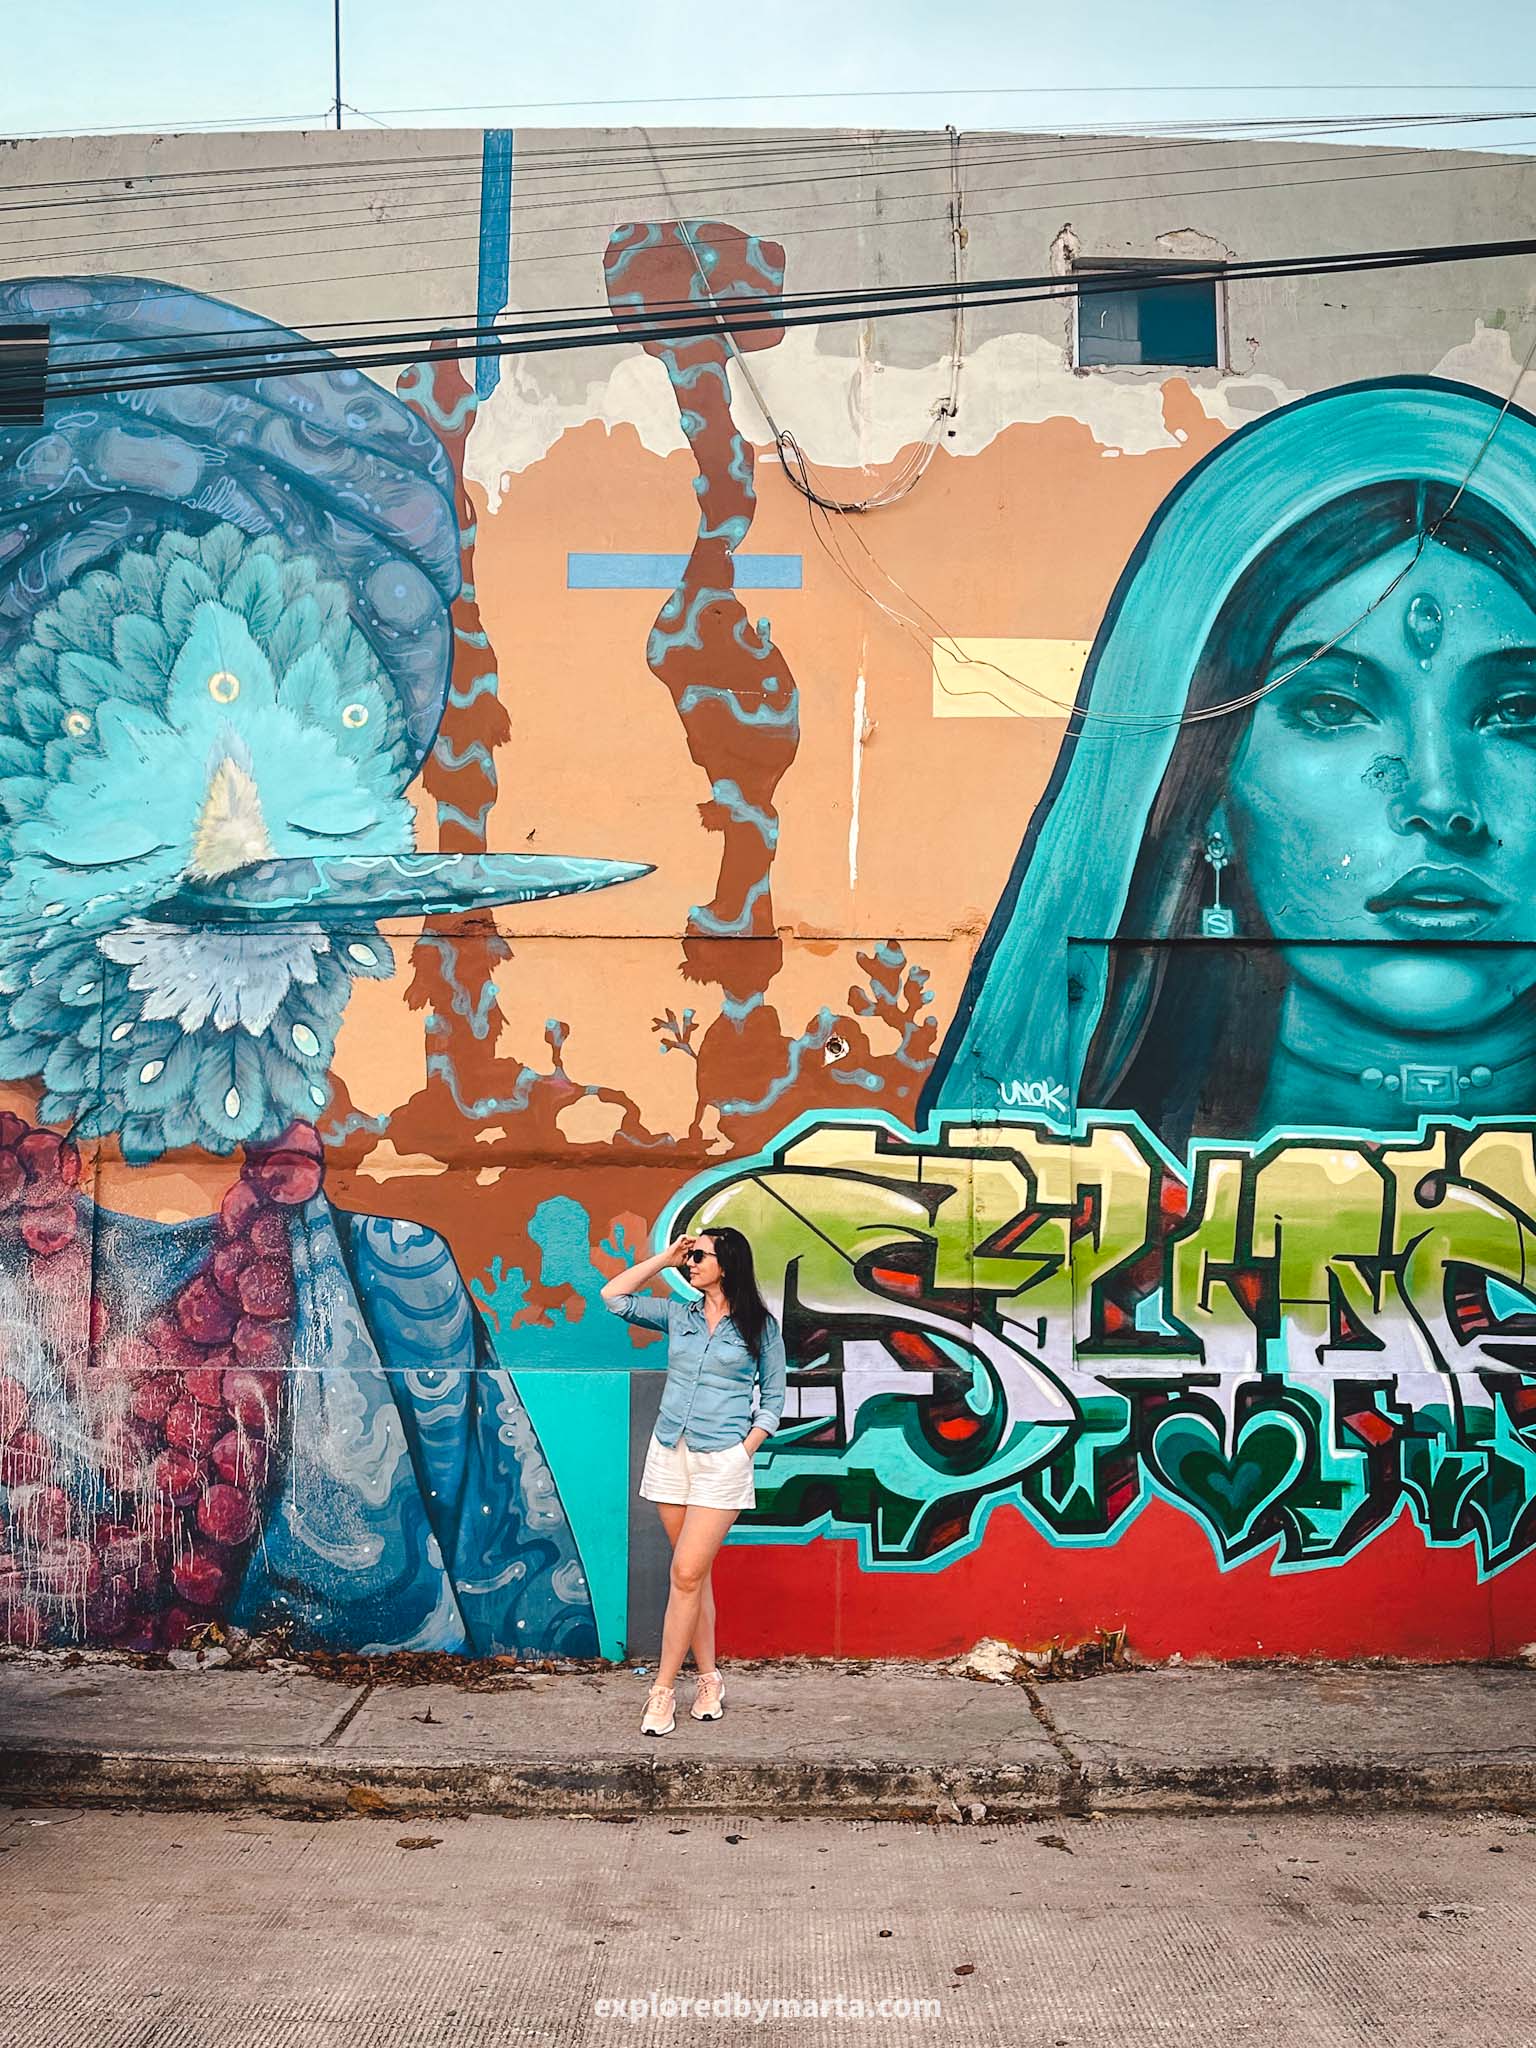 Cancun, Mexico - best Instagram spots in Cancun - street art murals in Cancun